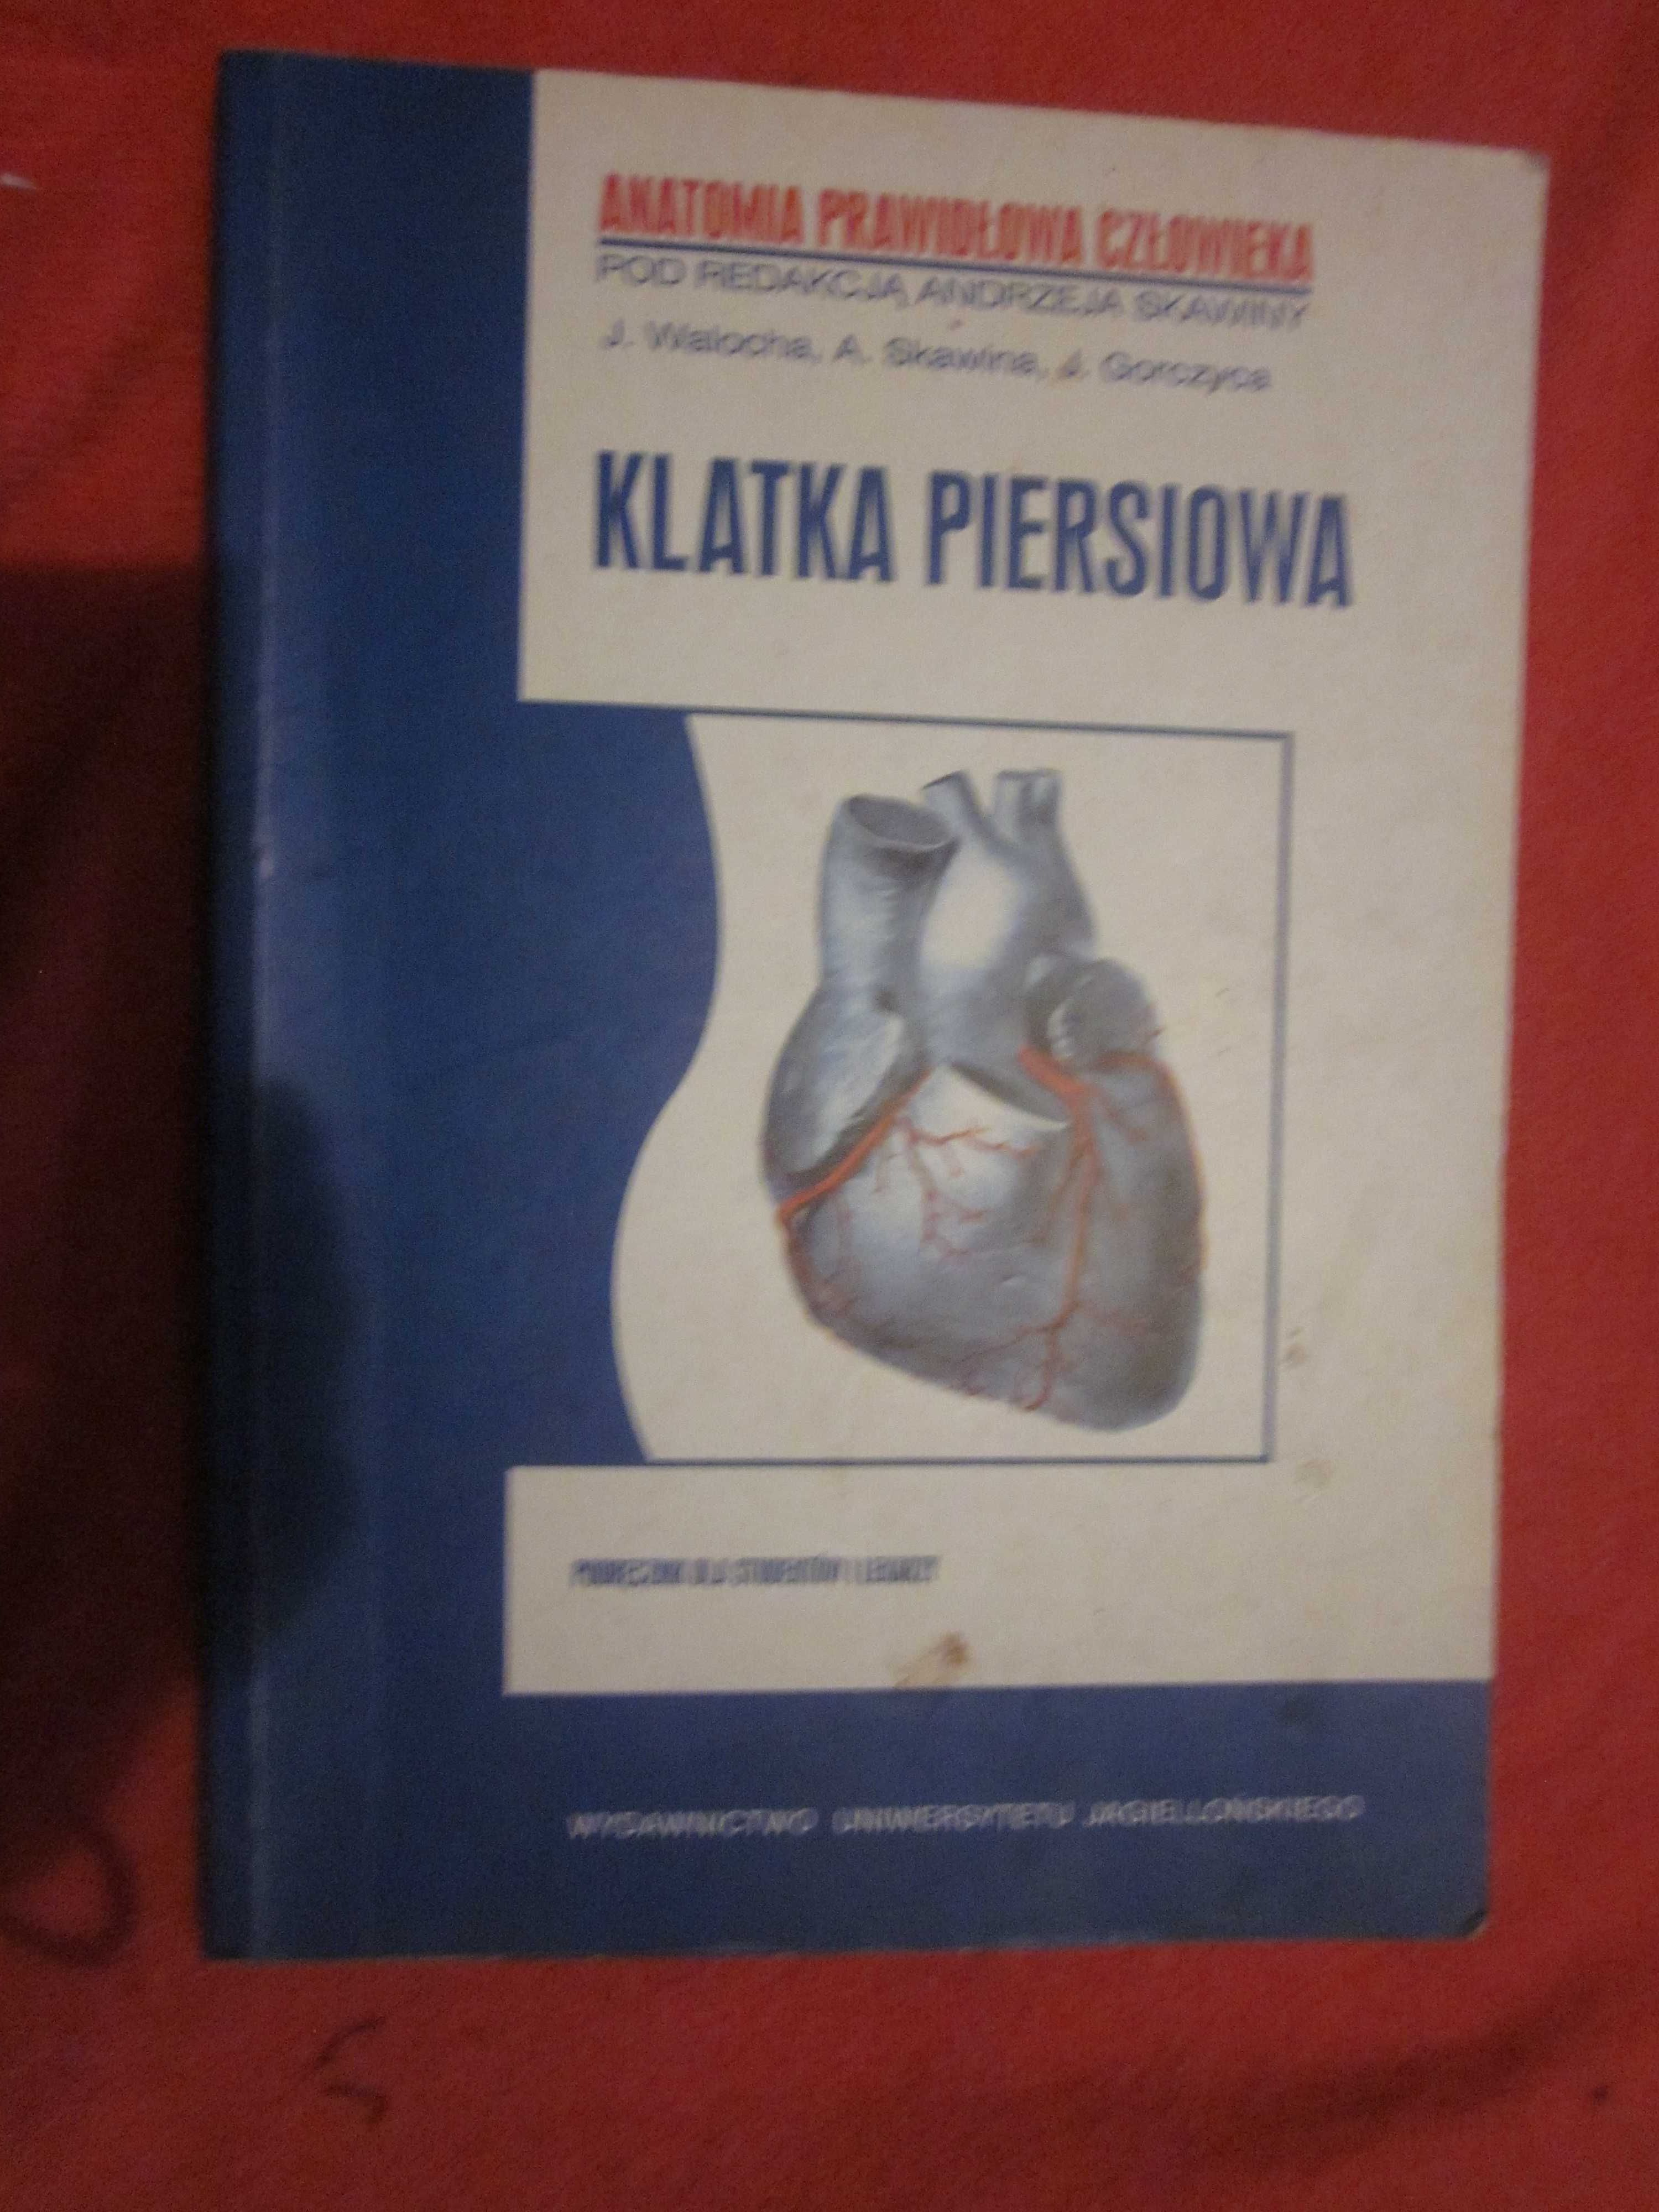 anatomia prawidłowa człowieka-klatka piersiowa